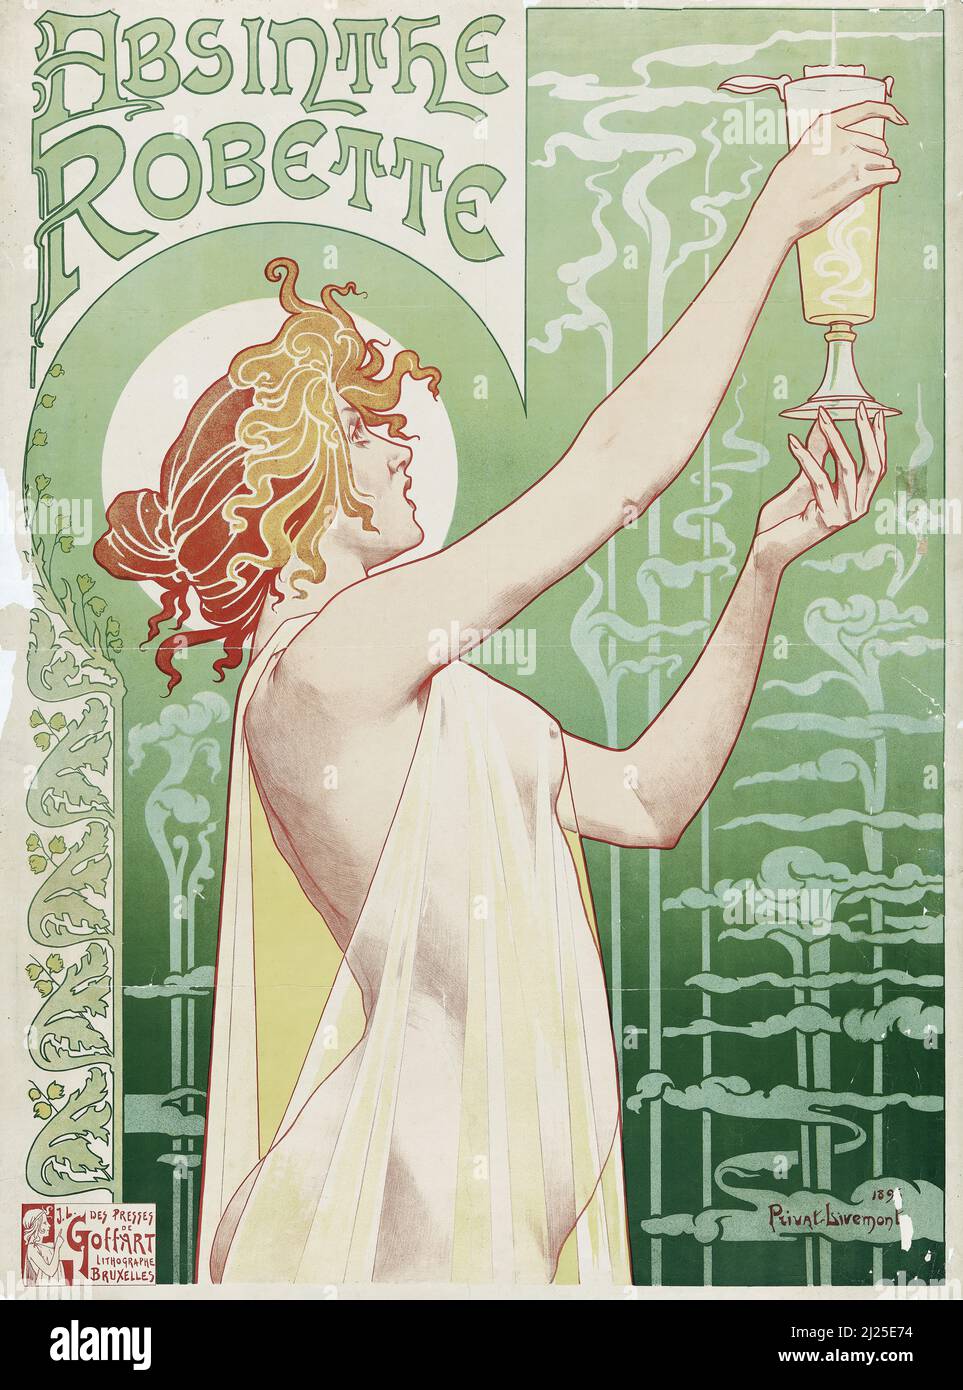 Vintage Art Nouveau di Henri Privat-Livemont - Assenzio Robette (1896) pubblicato in Les Maîtres de l'Affiche. Foto Stock